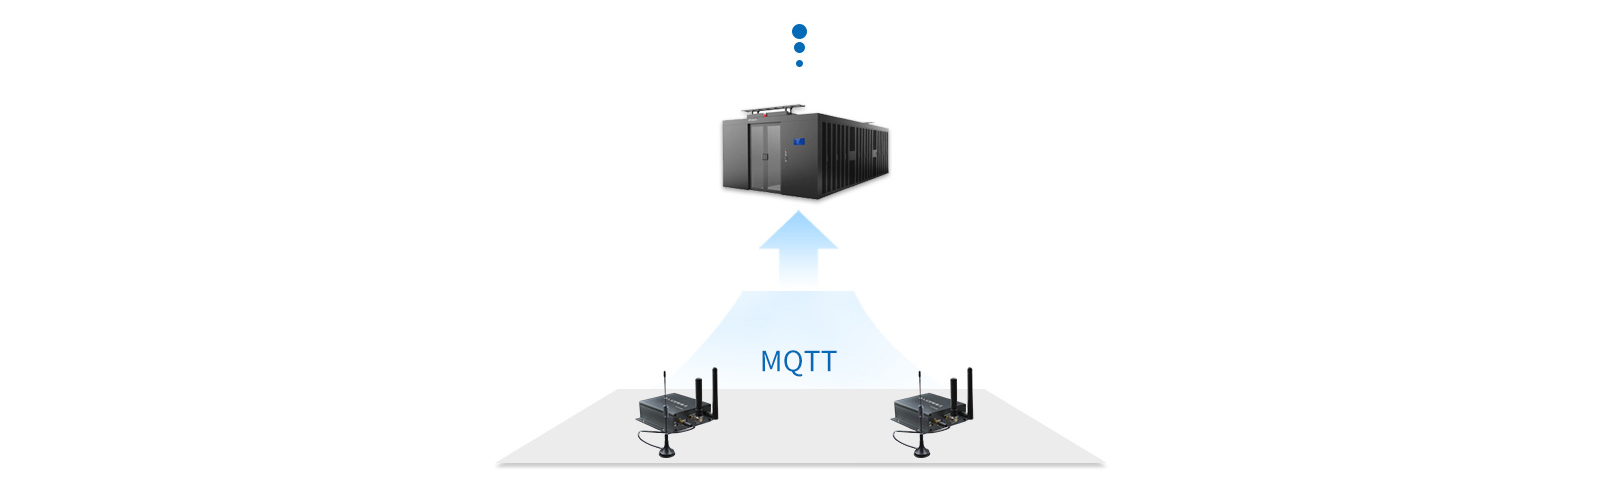 工业网关支持物联网领域标准协议MQTT